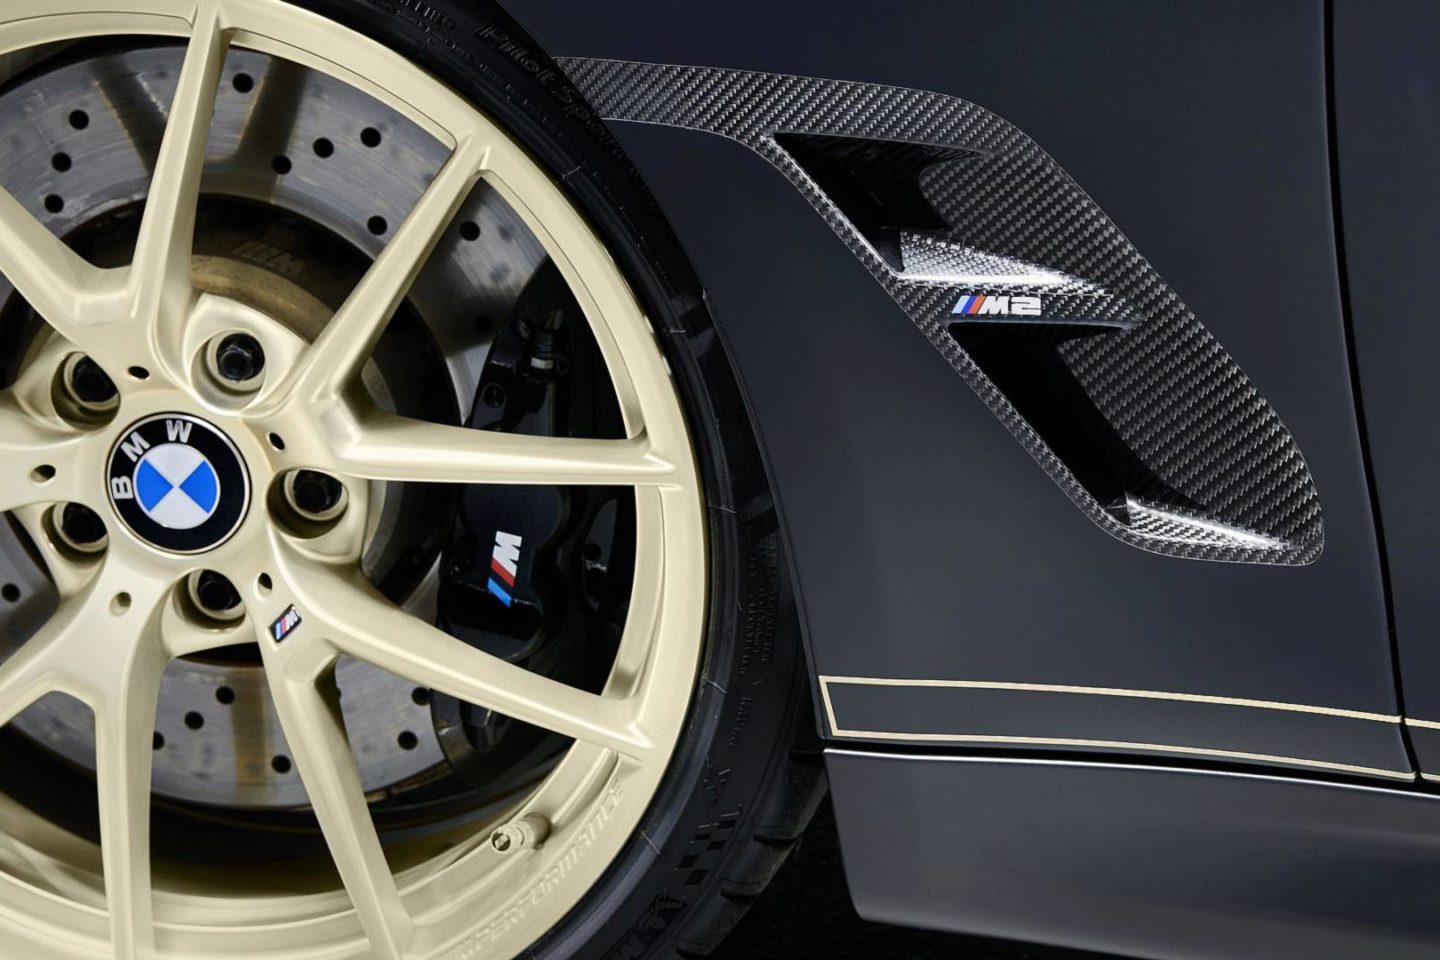 BMW M Performance Parts Concept, BMW M2